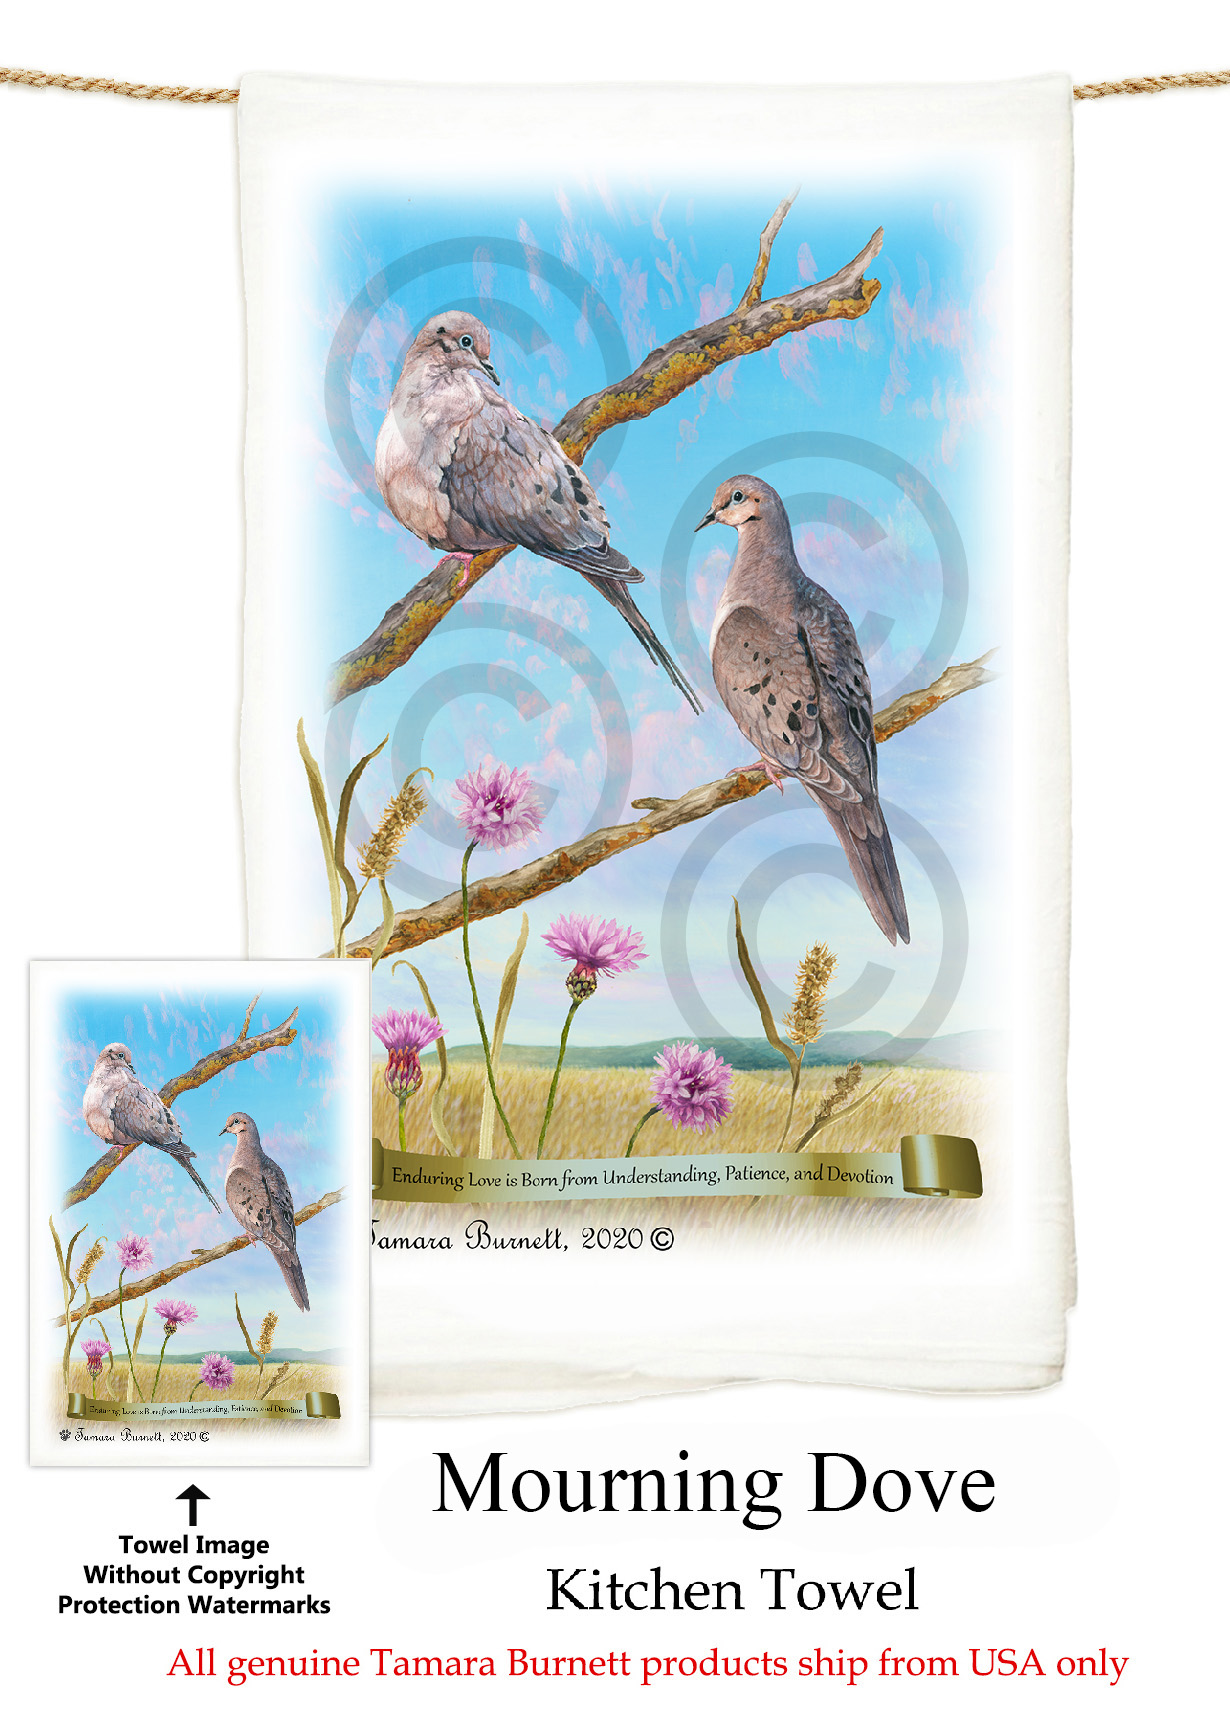 Mourning Doves - Flour Sack Towel image sized 1230 x 1717